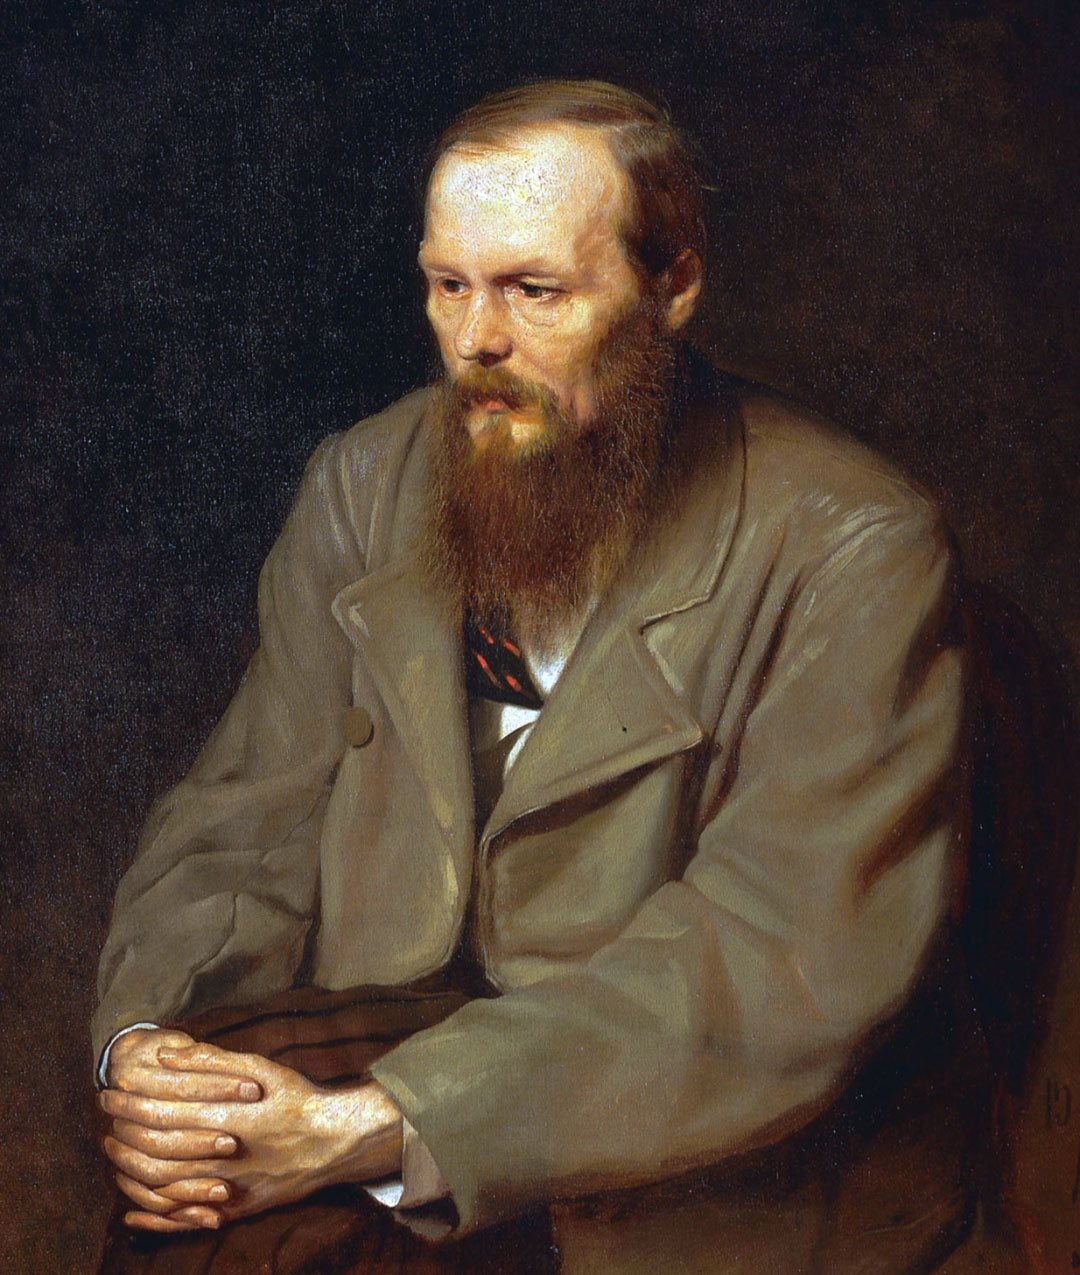  Fiodor Dostoïevski, biographie : histoire, vie et œuvres